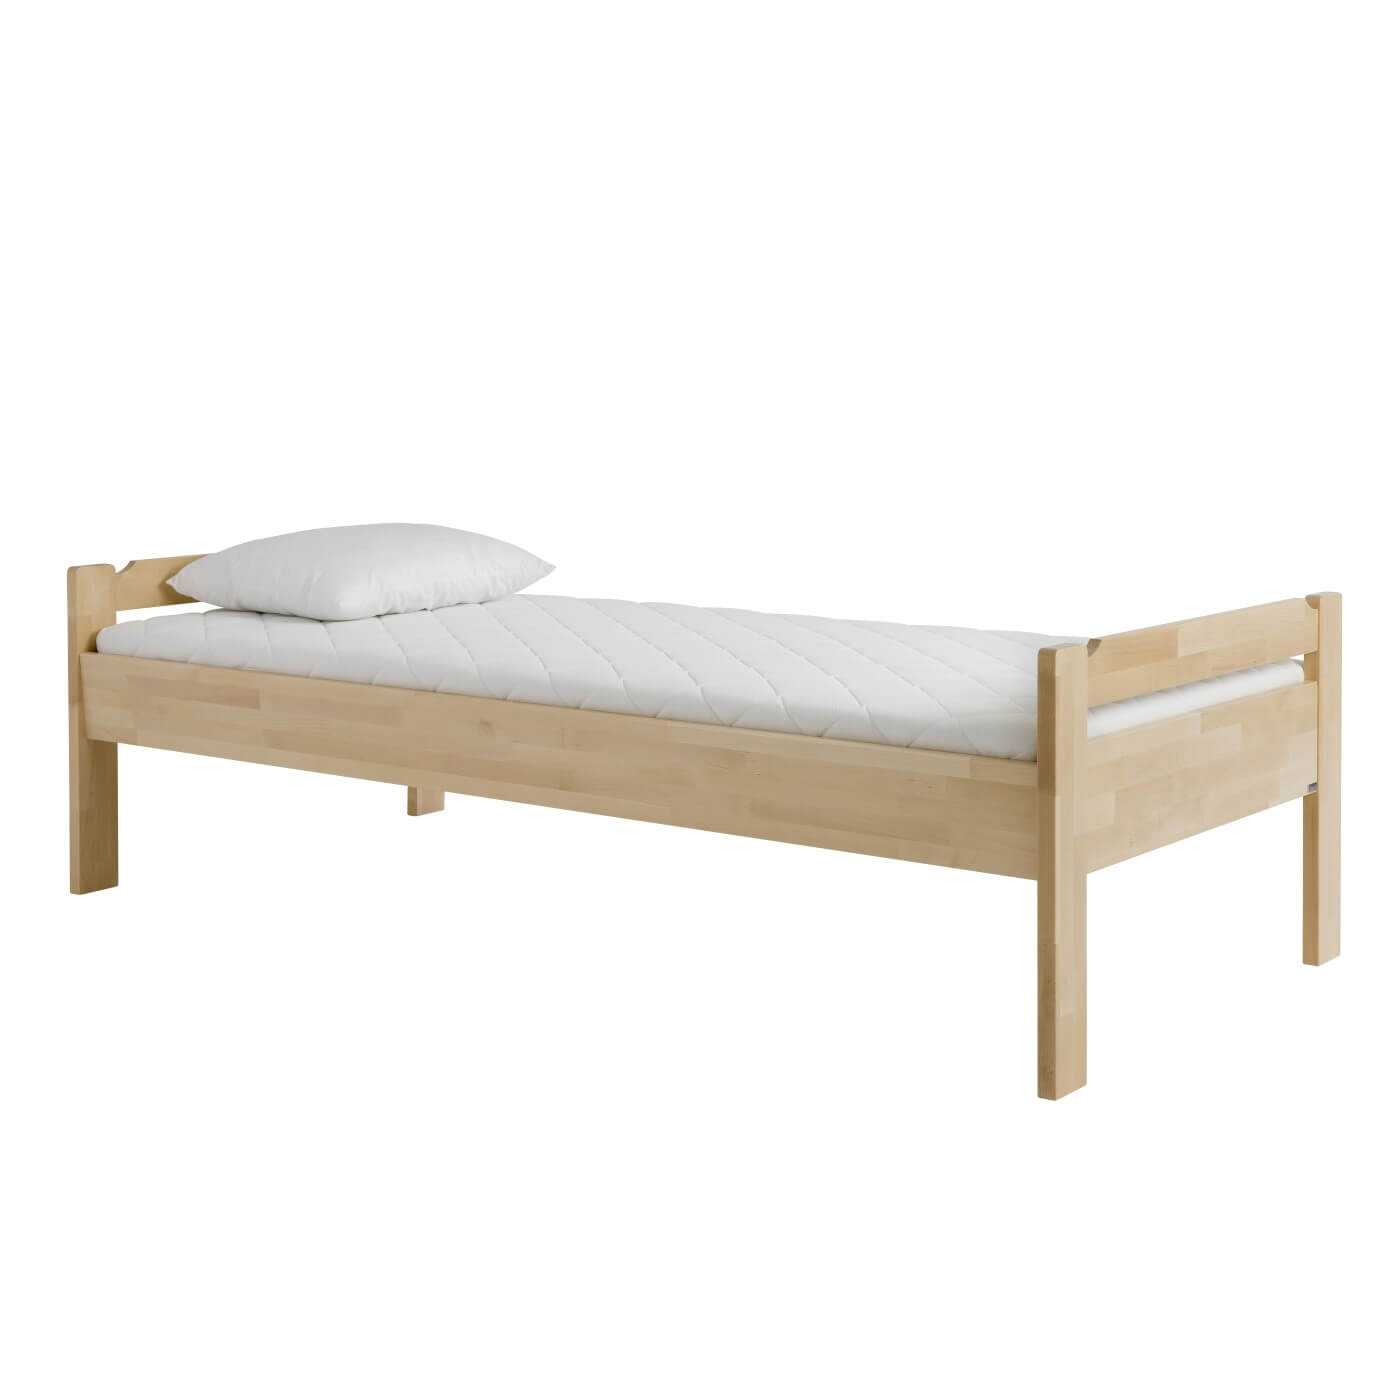 Łóżko z niskim zagłówkiem KUUSAMO z materacem 80x200 i leżącą na nim białą poduszą. Łóżko na wysokich nóżkach z drewna brzozy skandynawskiej widoczne w całości